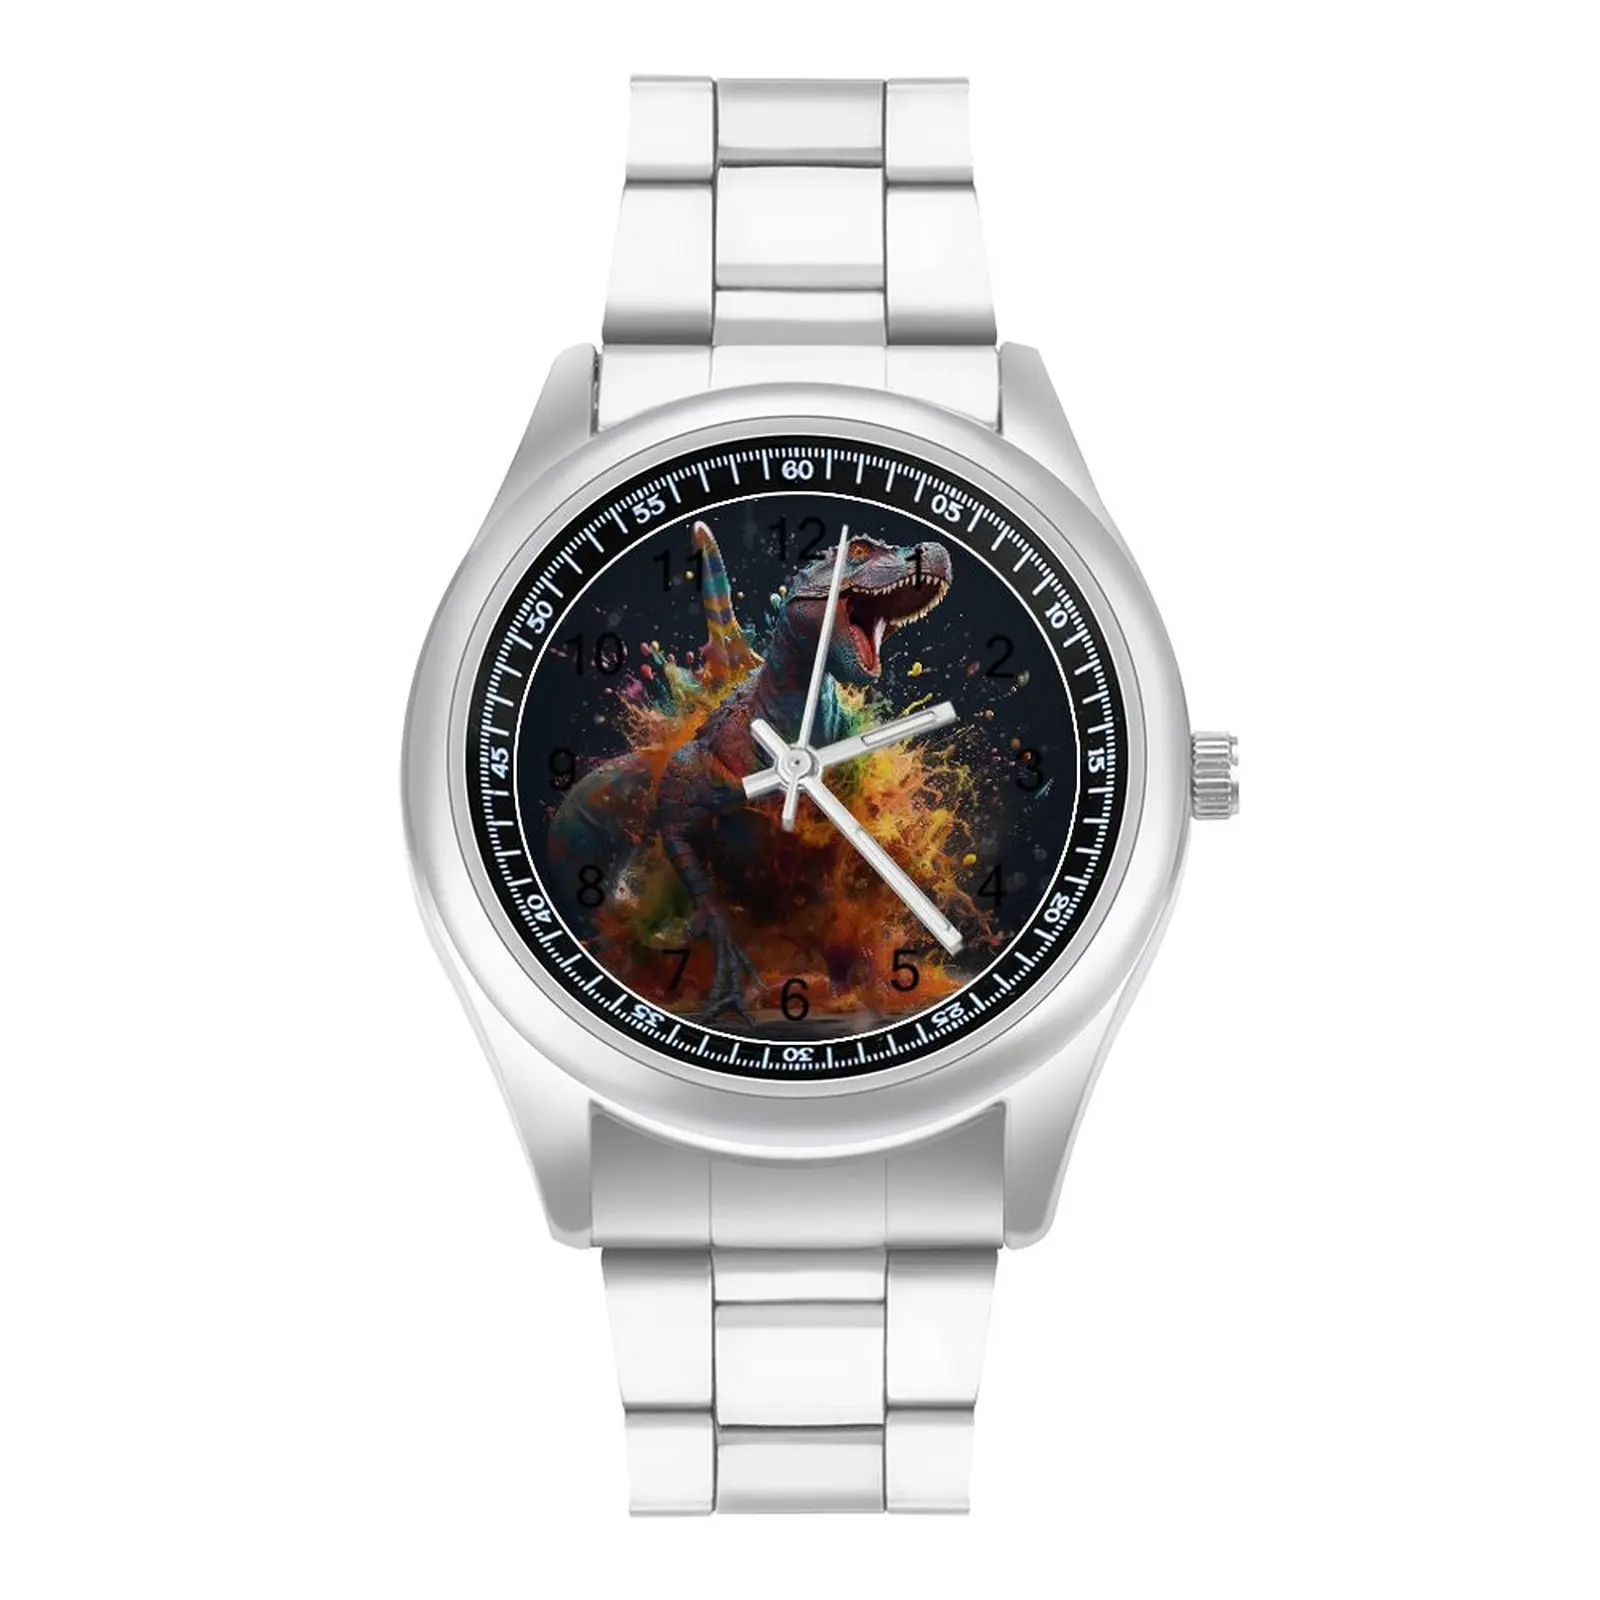 

Dinosaur Quartz Watch Liquid Splash Explosion Stainless Design Wrist Watches Man Office Fancy Wholesale Wristwatch